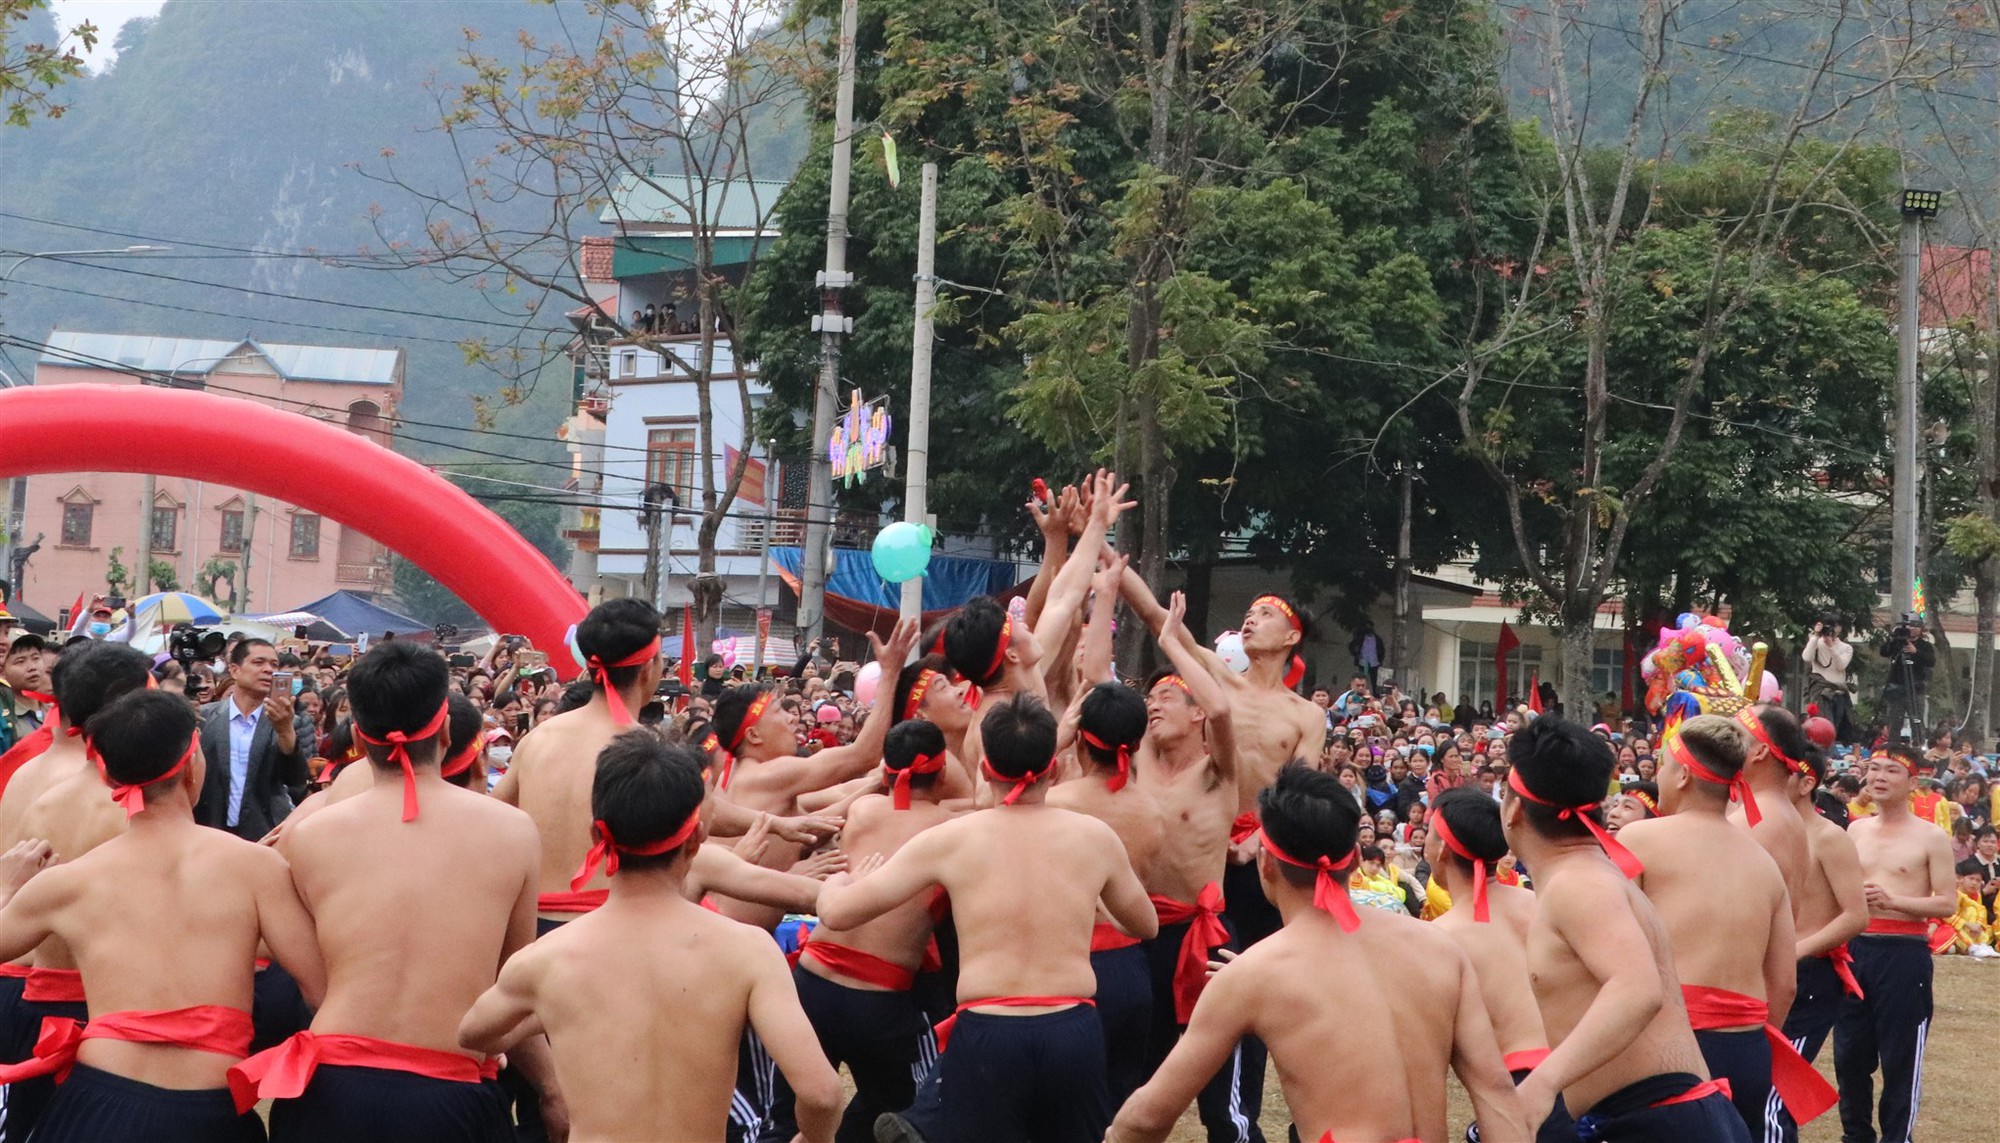 Đây là trò chơi dân gian hút khách xem tại một lễ hội mùa xuân ở Cao Bằng, tham gia toàn trai làng to khỏe - Ảnh 1.